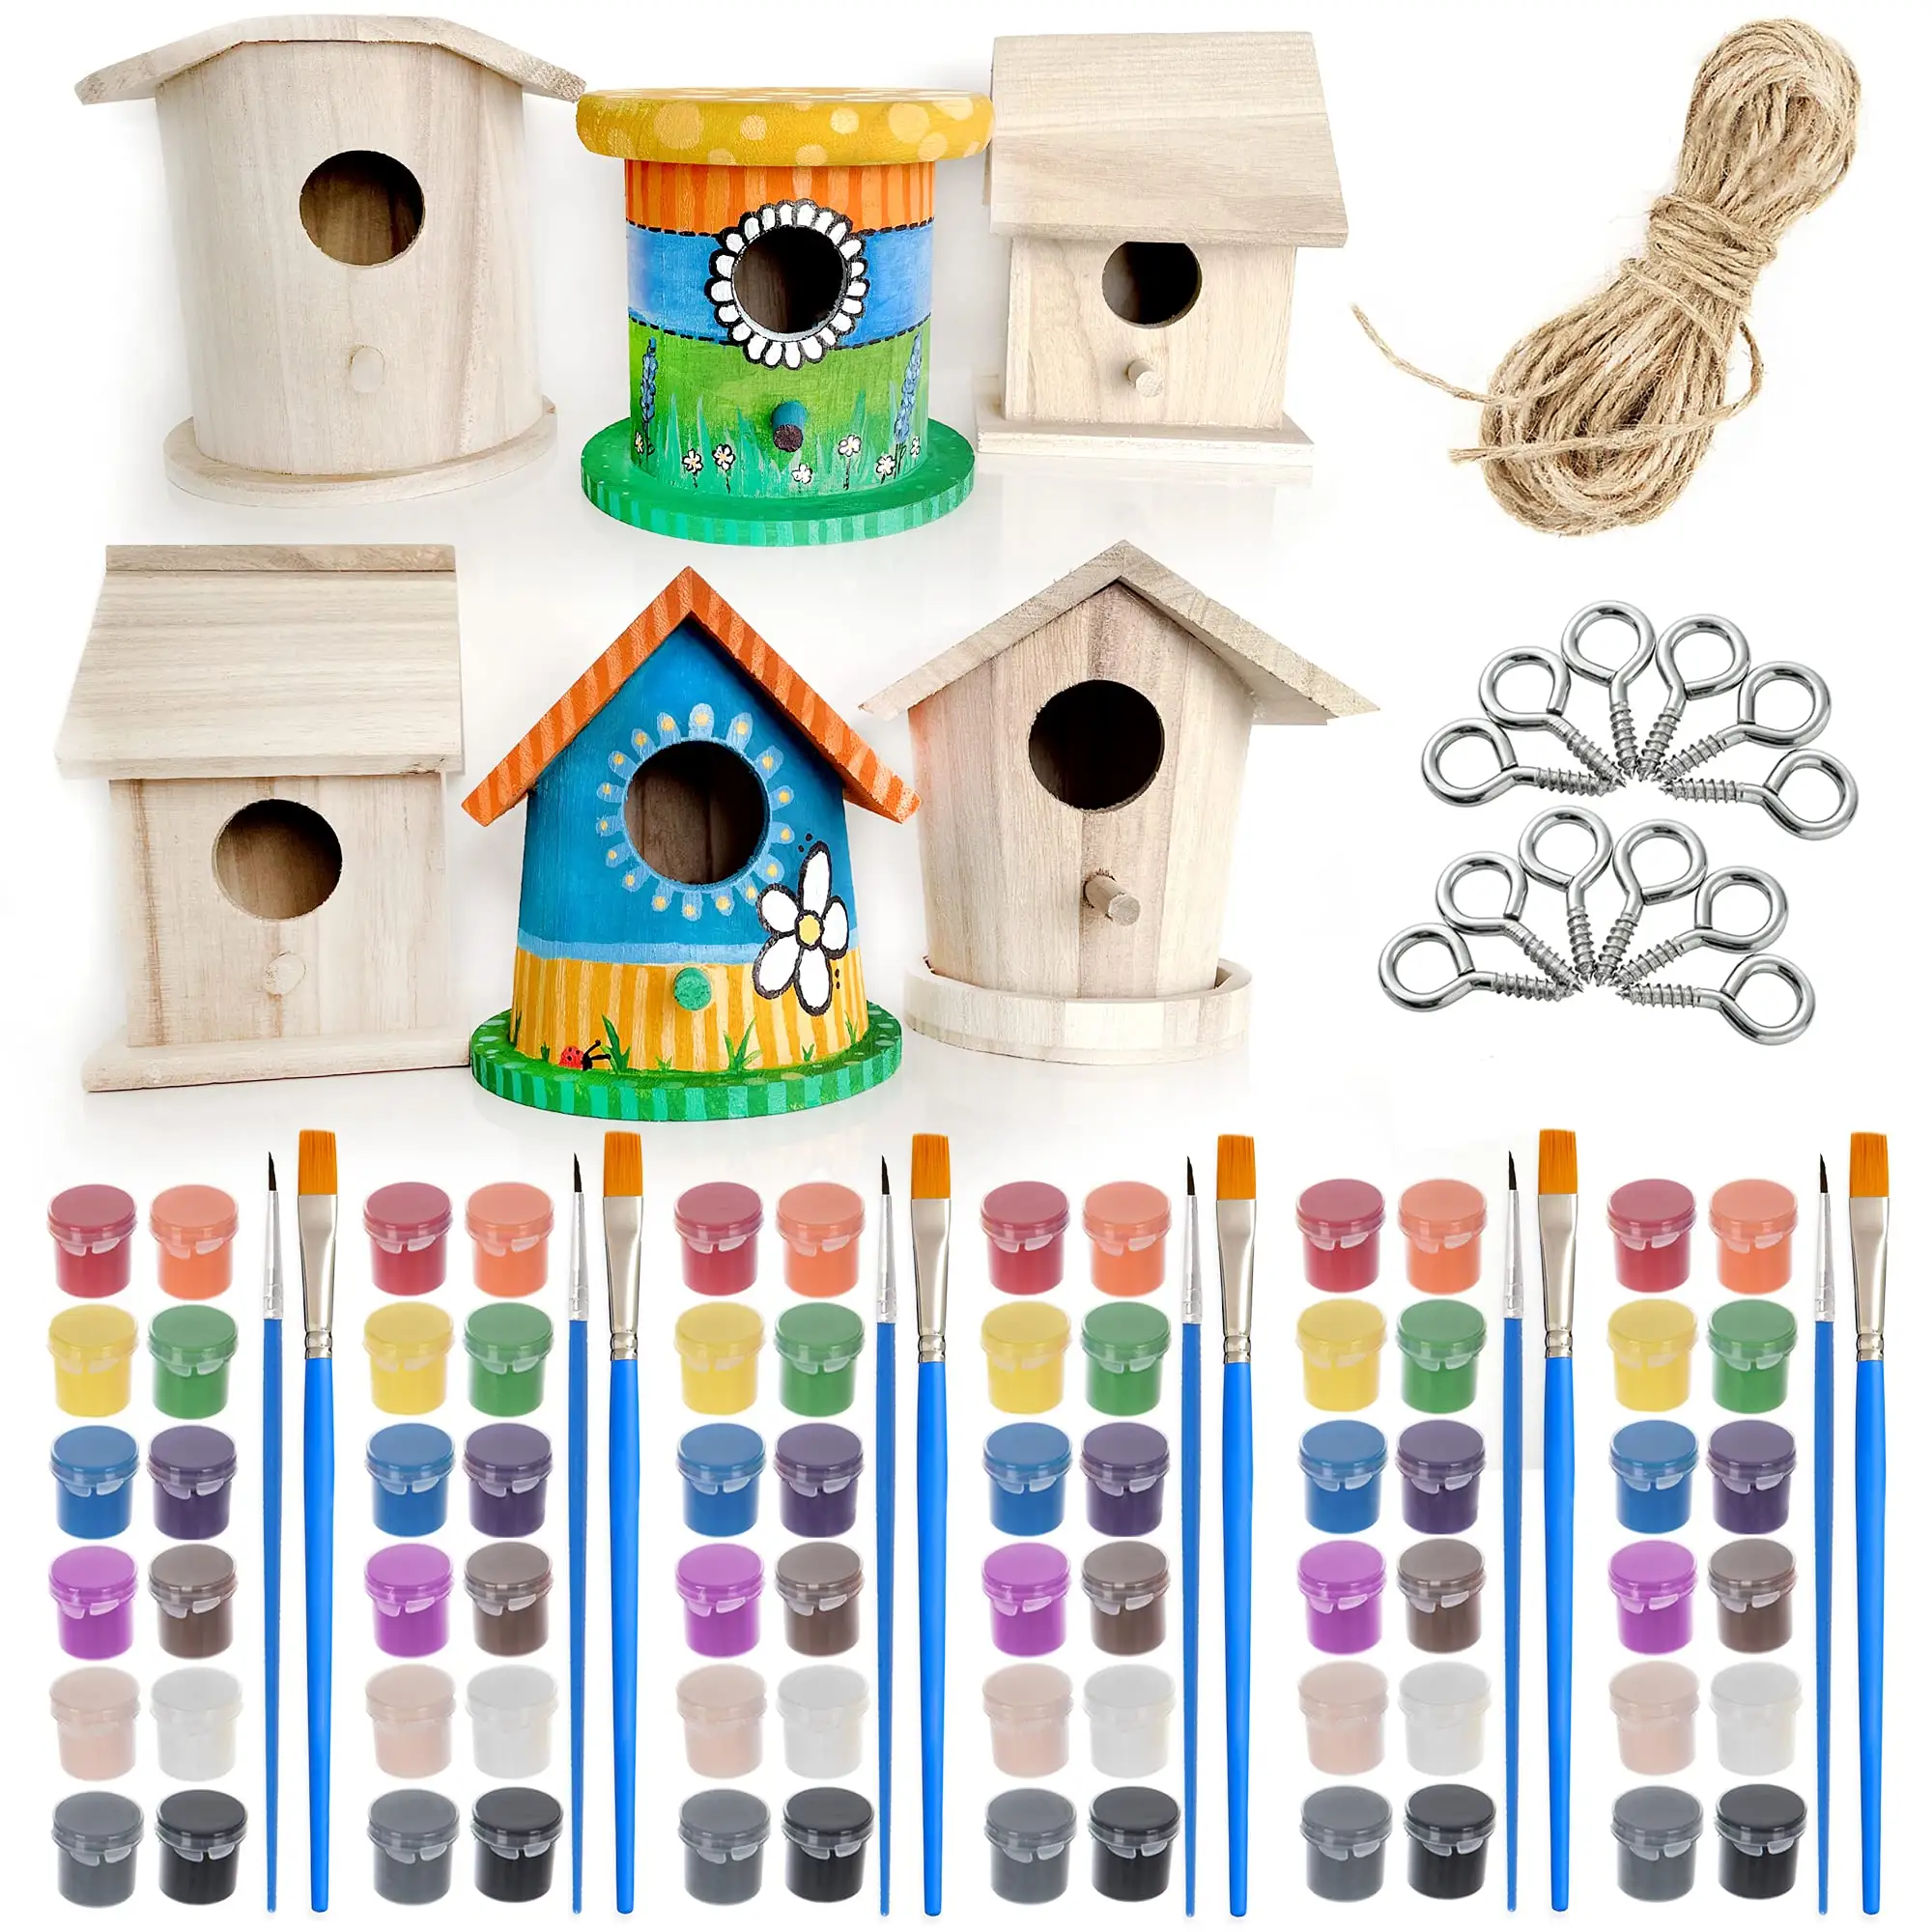 नई डिजाइन आकार लकड़ी Birdhouse अधूरा भारी ड्यूटी DIY पिगमेंट के साथ पक्षियों सर्दियों किट उपकरण